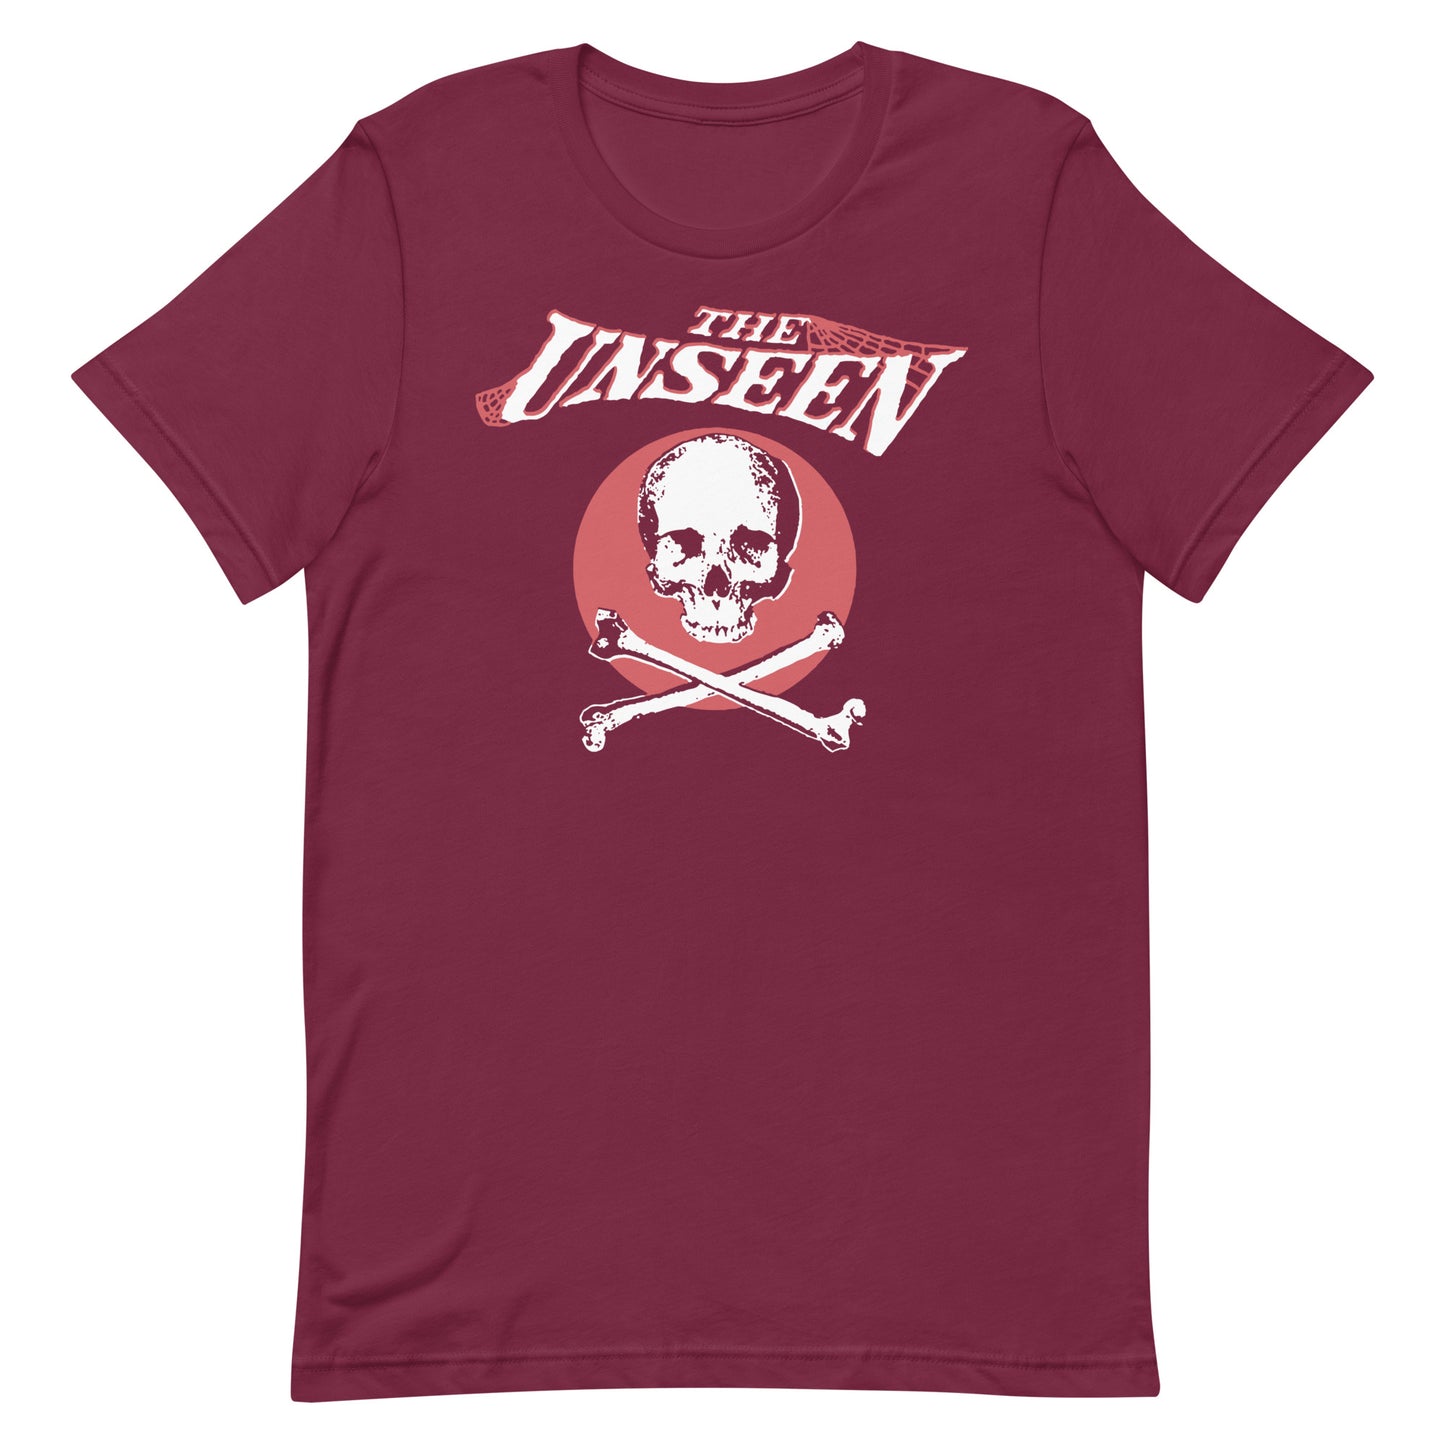 Unseen T-Shirt